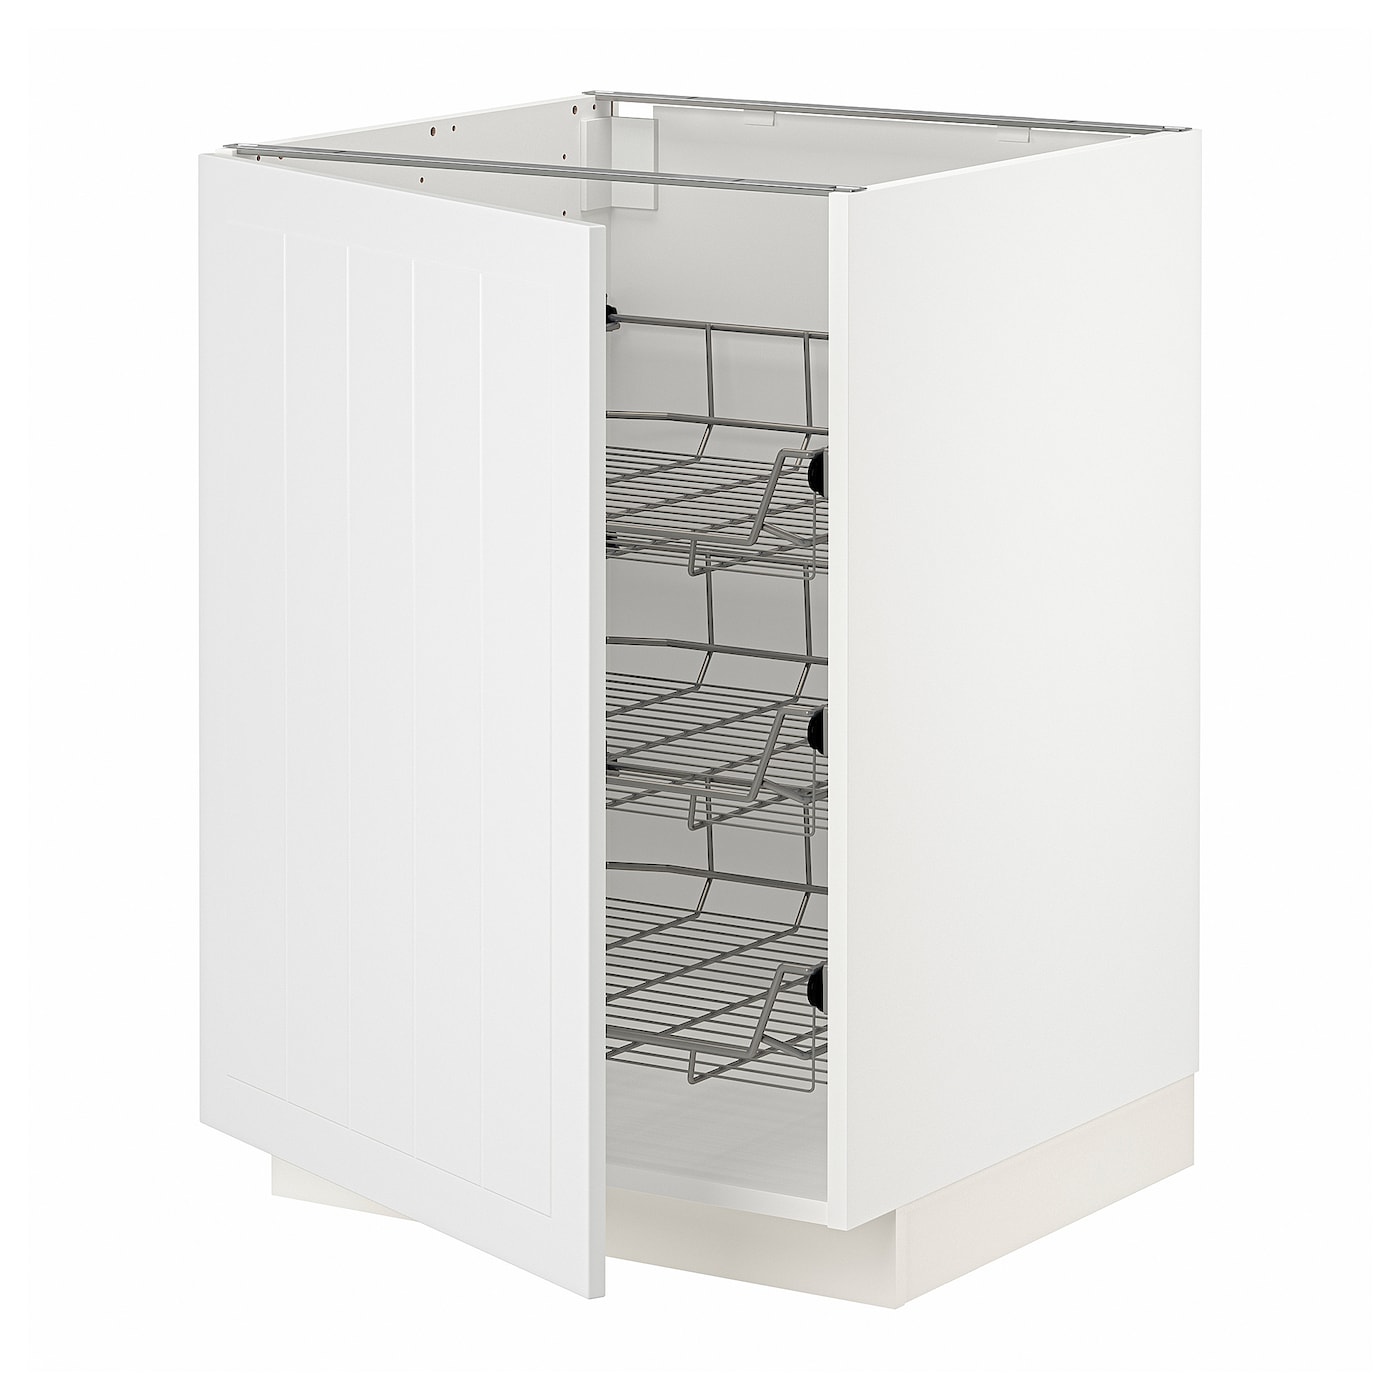 Напольный шкаф  - IKEA METOD, 88x62x60см, белый/серый, МЕТОД ИКЕА